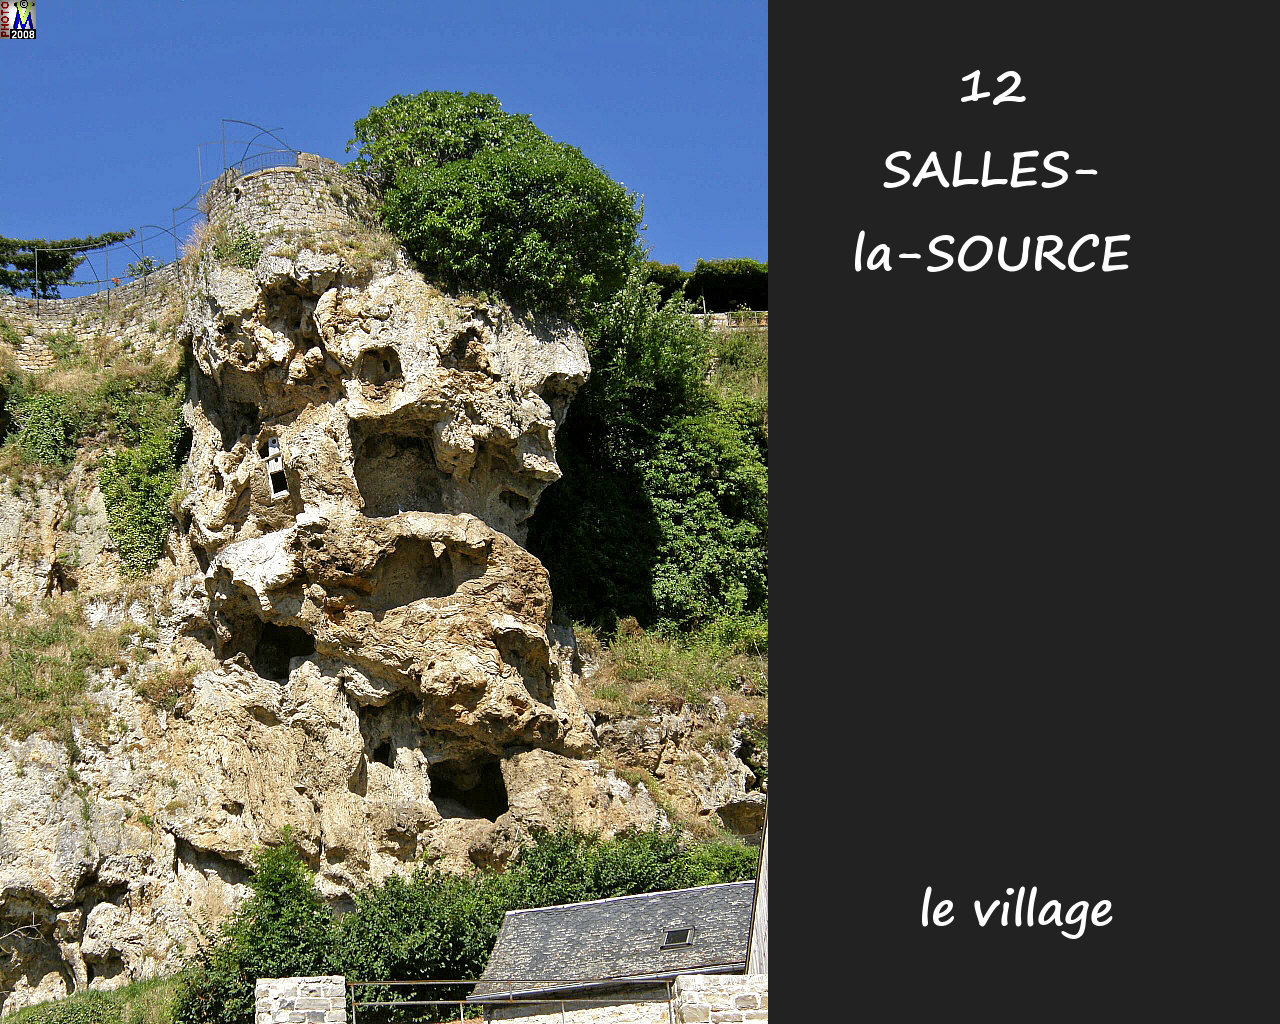 12SALLES-SOURCE_village_112.jpg